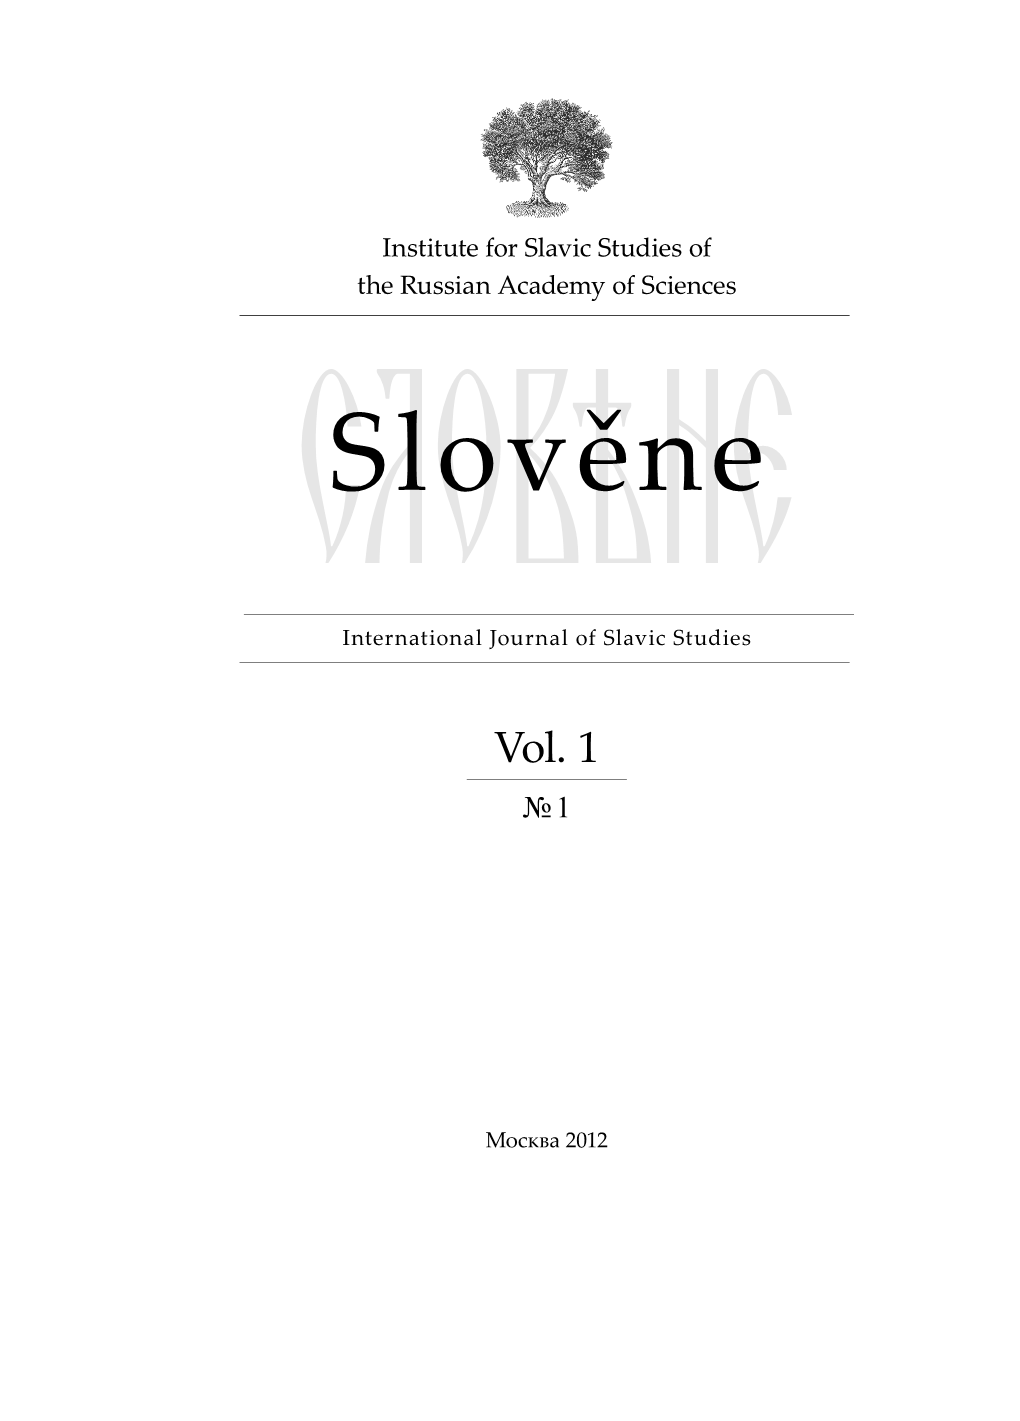 Slověne = Словѣне. International Journal of Slavic Studies